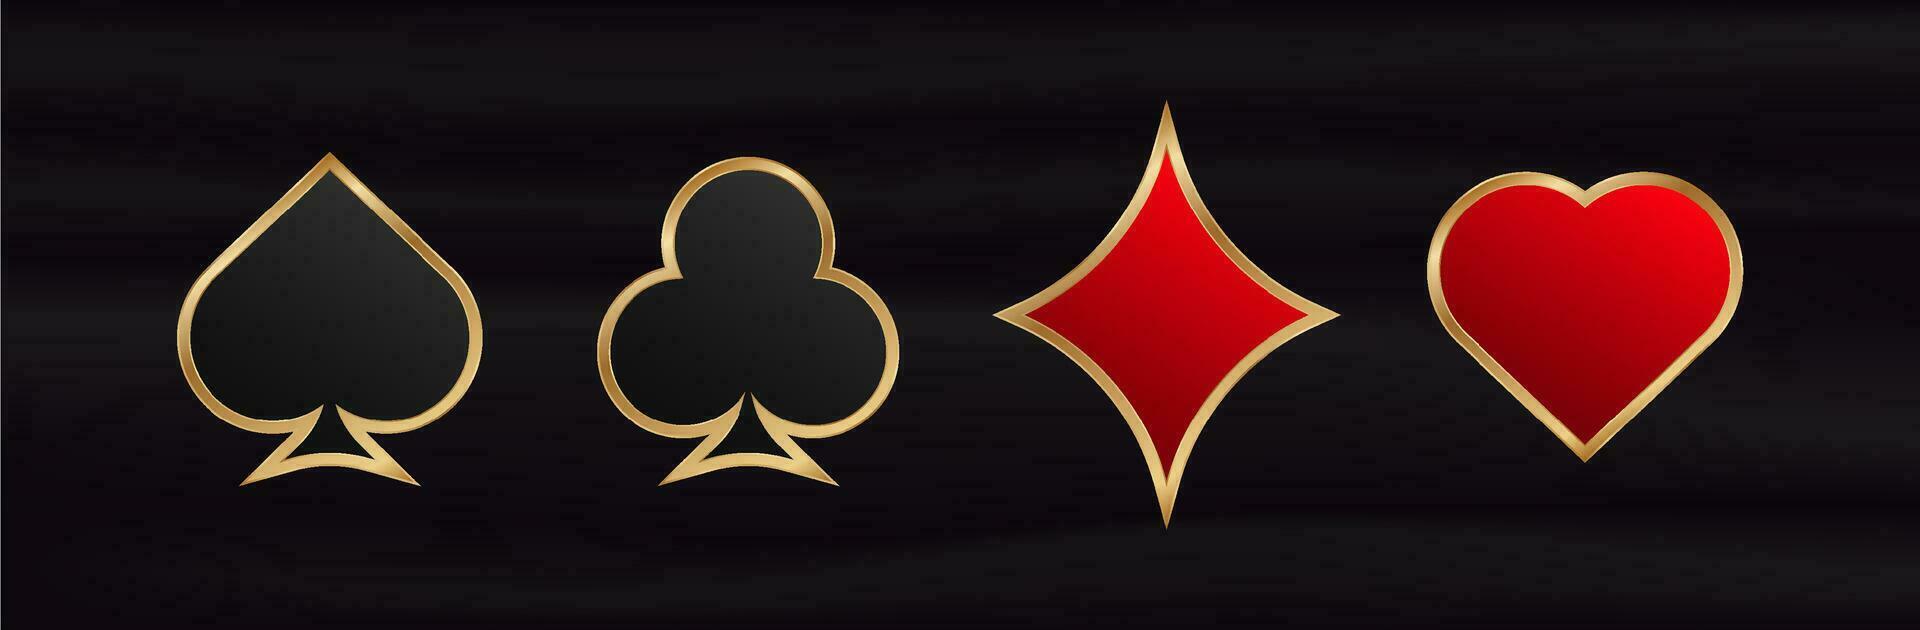 hasardspel kort kostymer. spel röd symbol av tur i poker och svart framgångsrik spel i kasino med blackjack och vektor satsningar